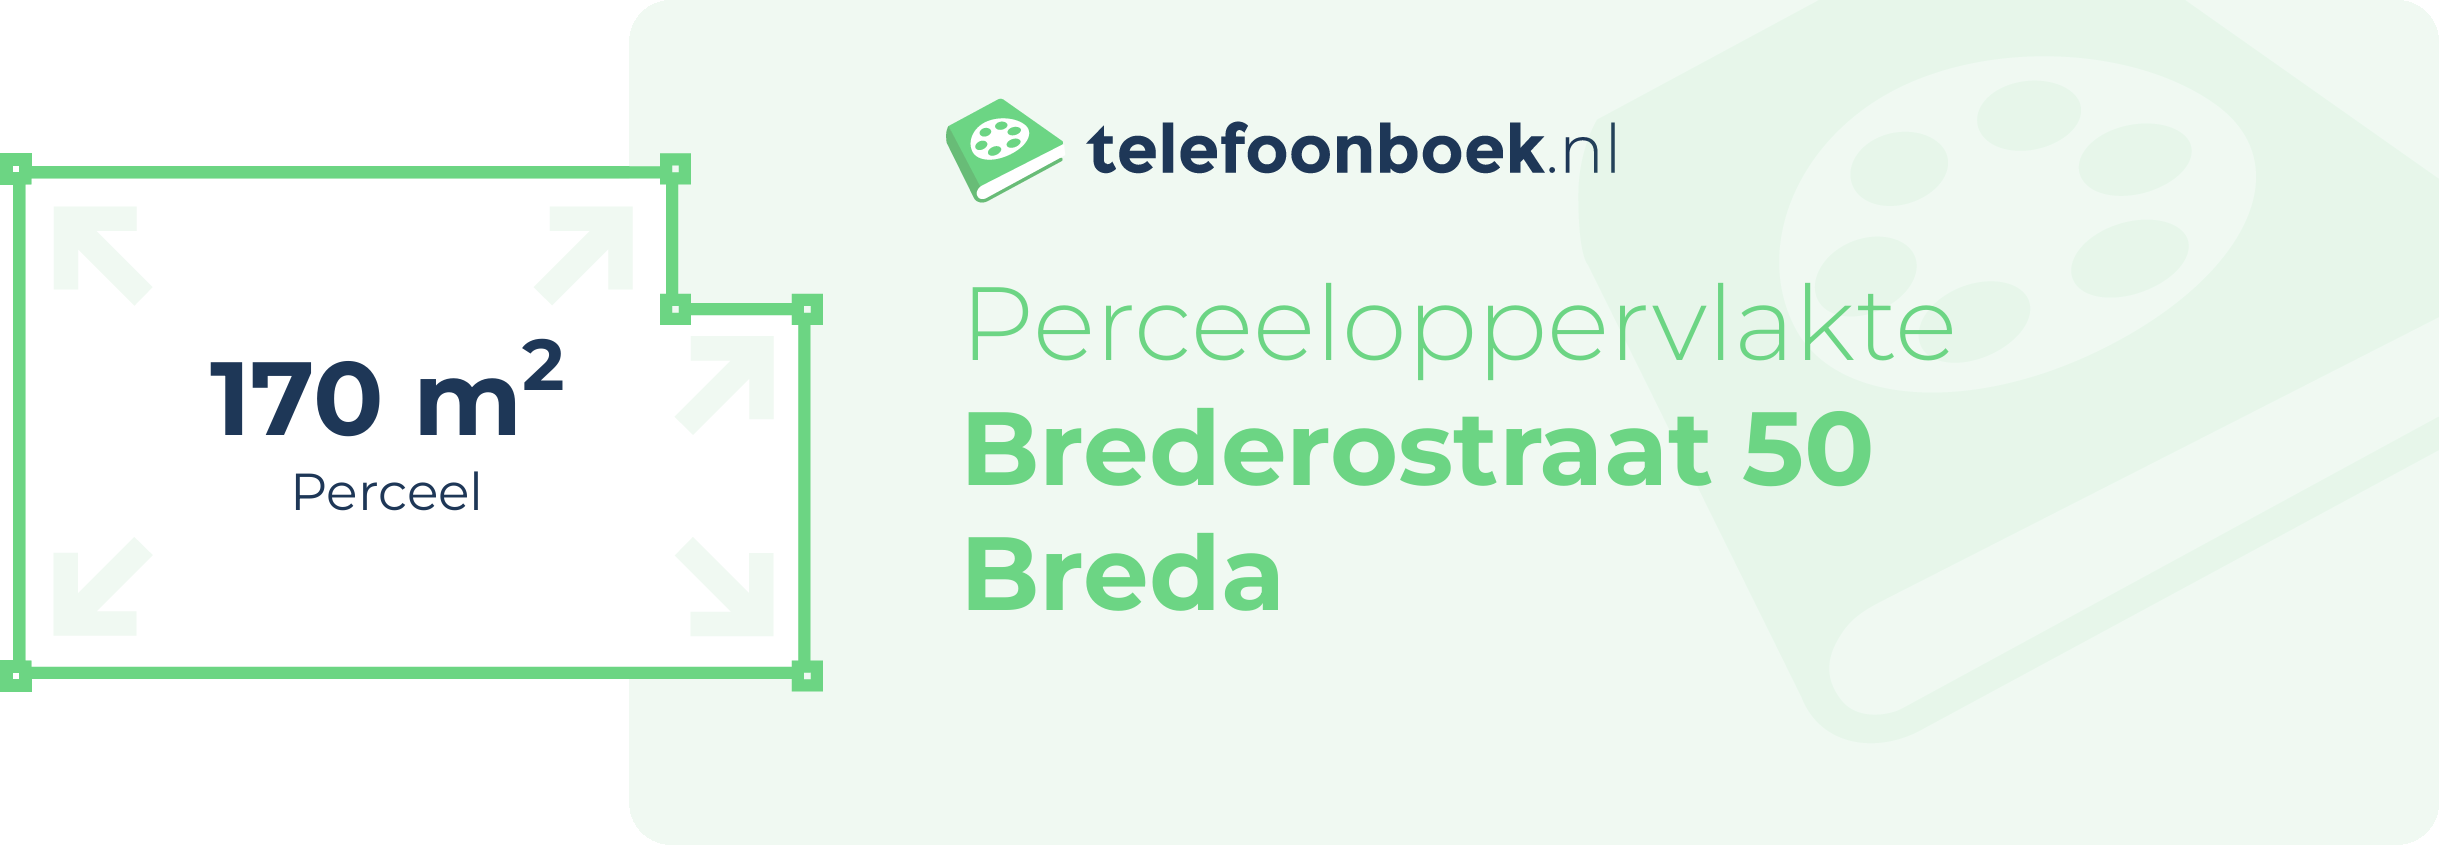 Perceeloppervlakte Brederostraat 50 Breda